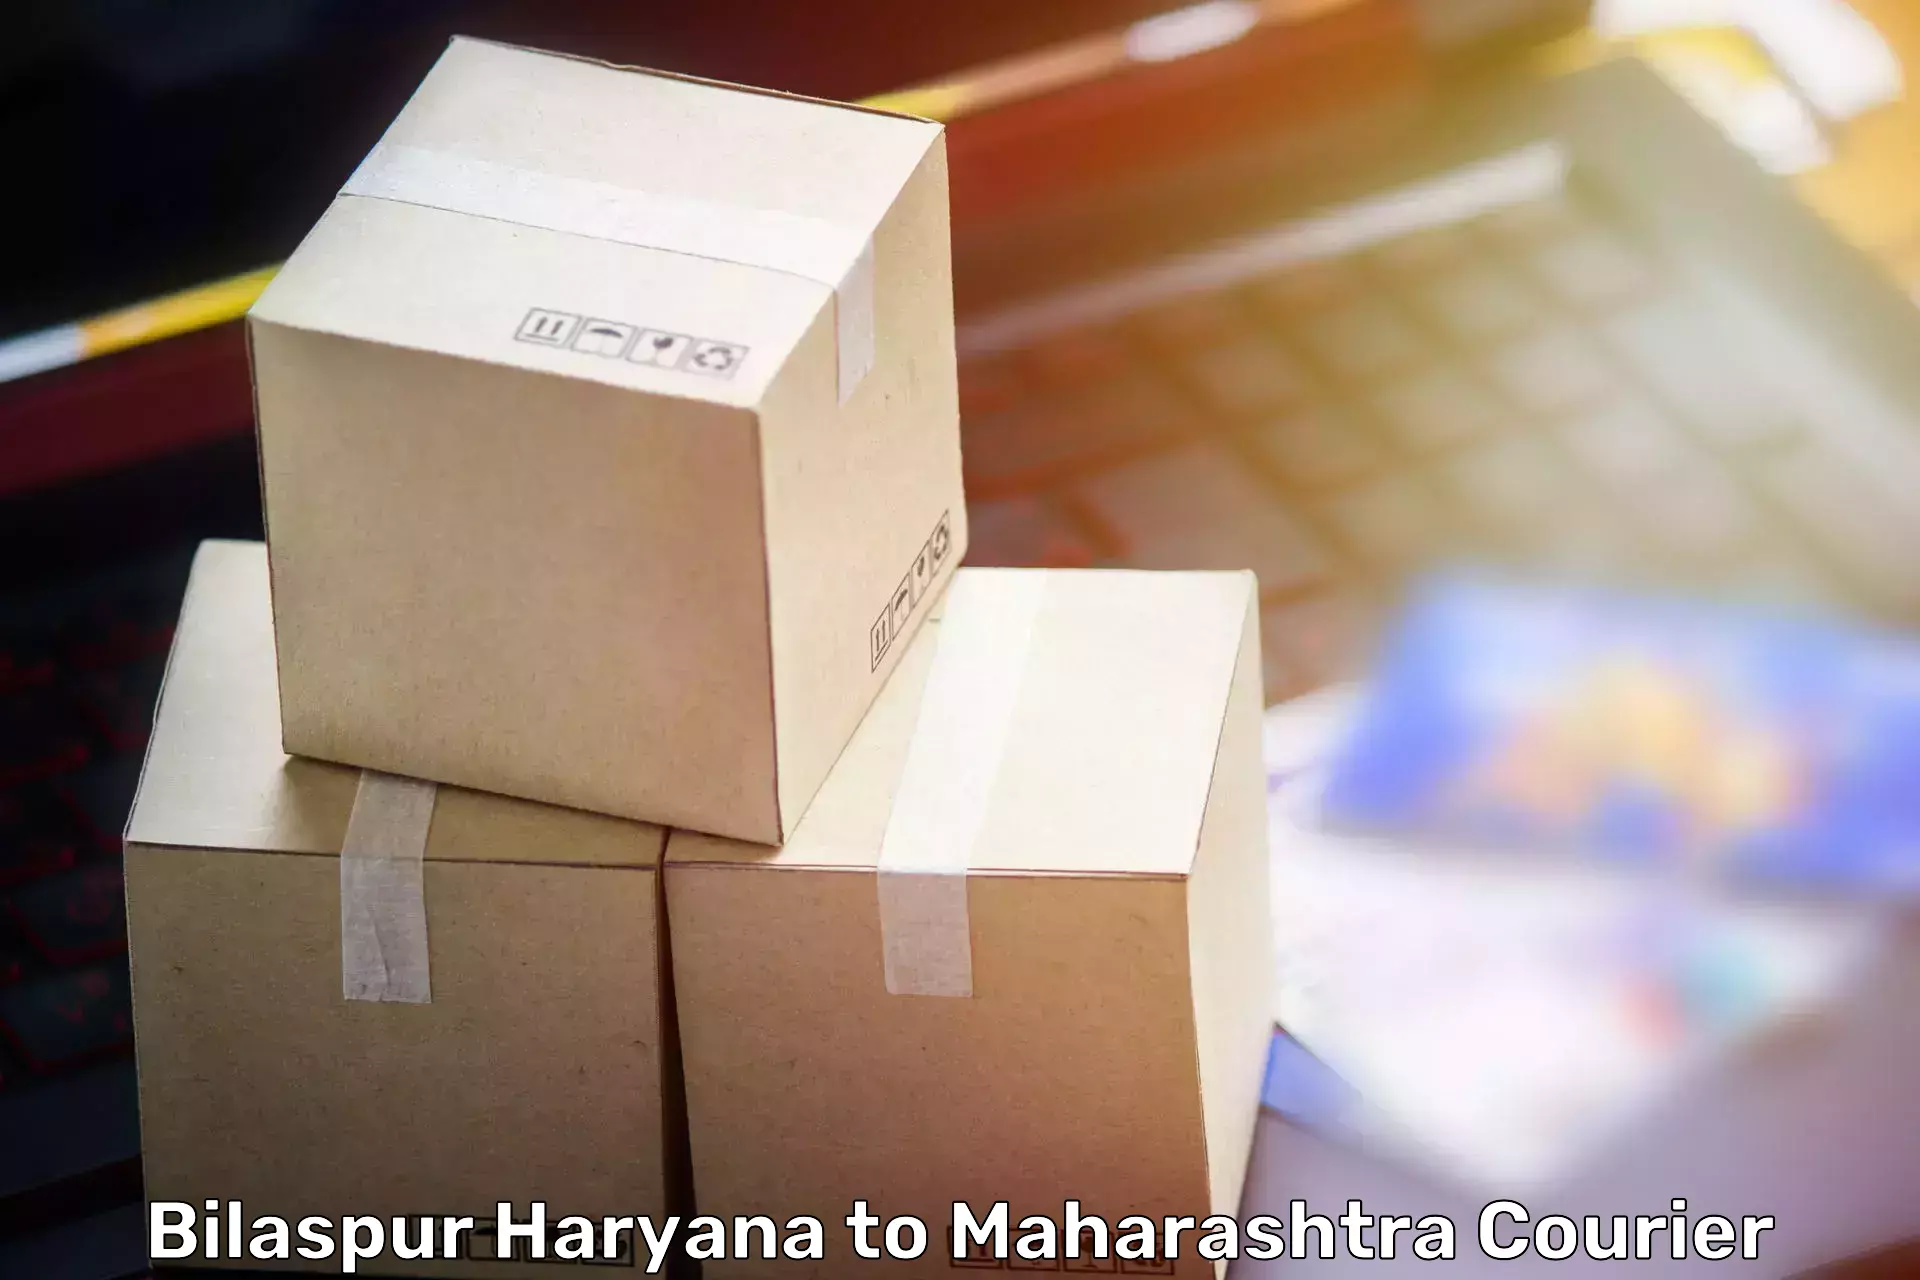 Furniture transport experts Bilaspur Haryana to Sangameshwar